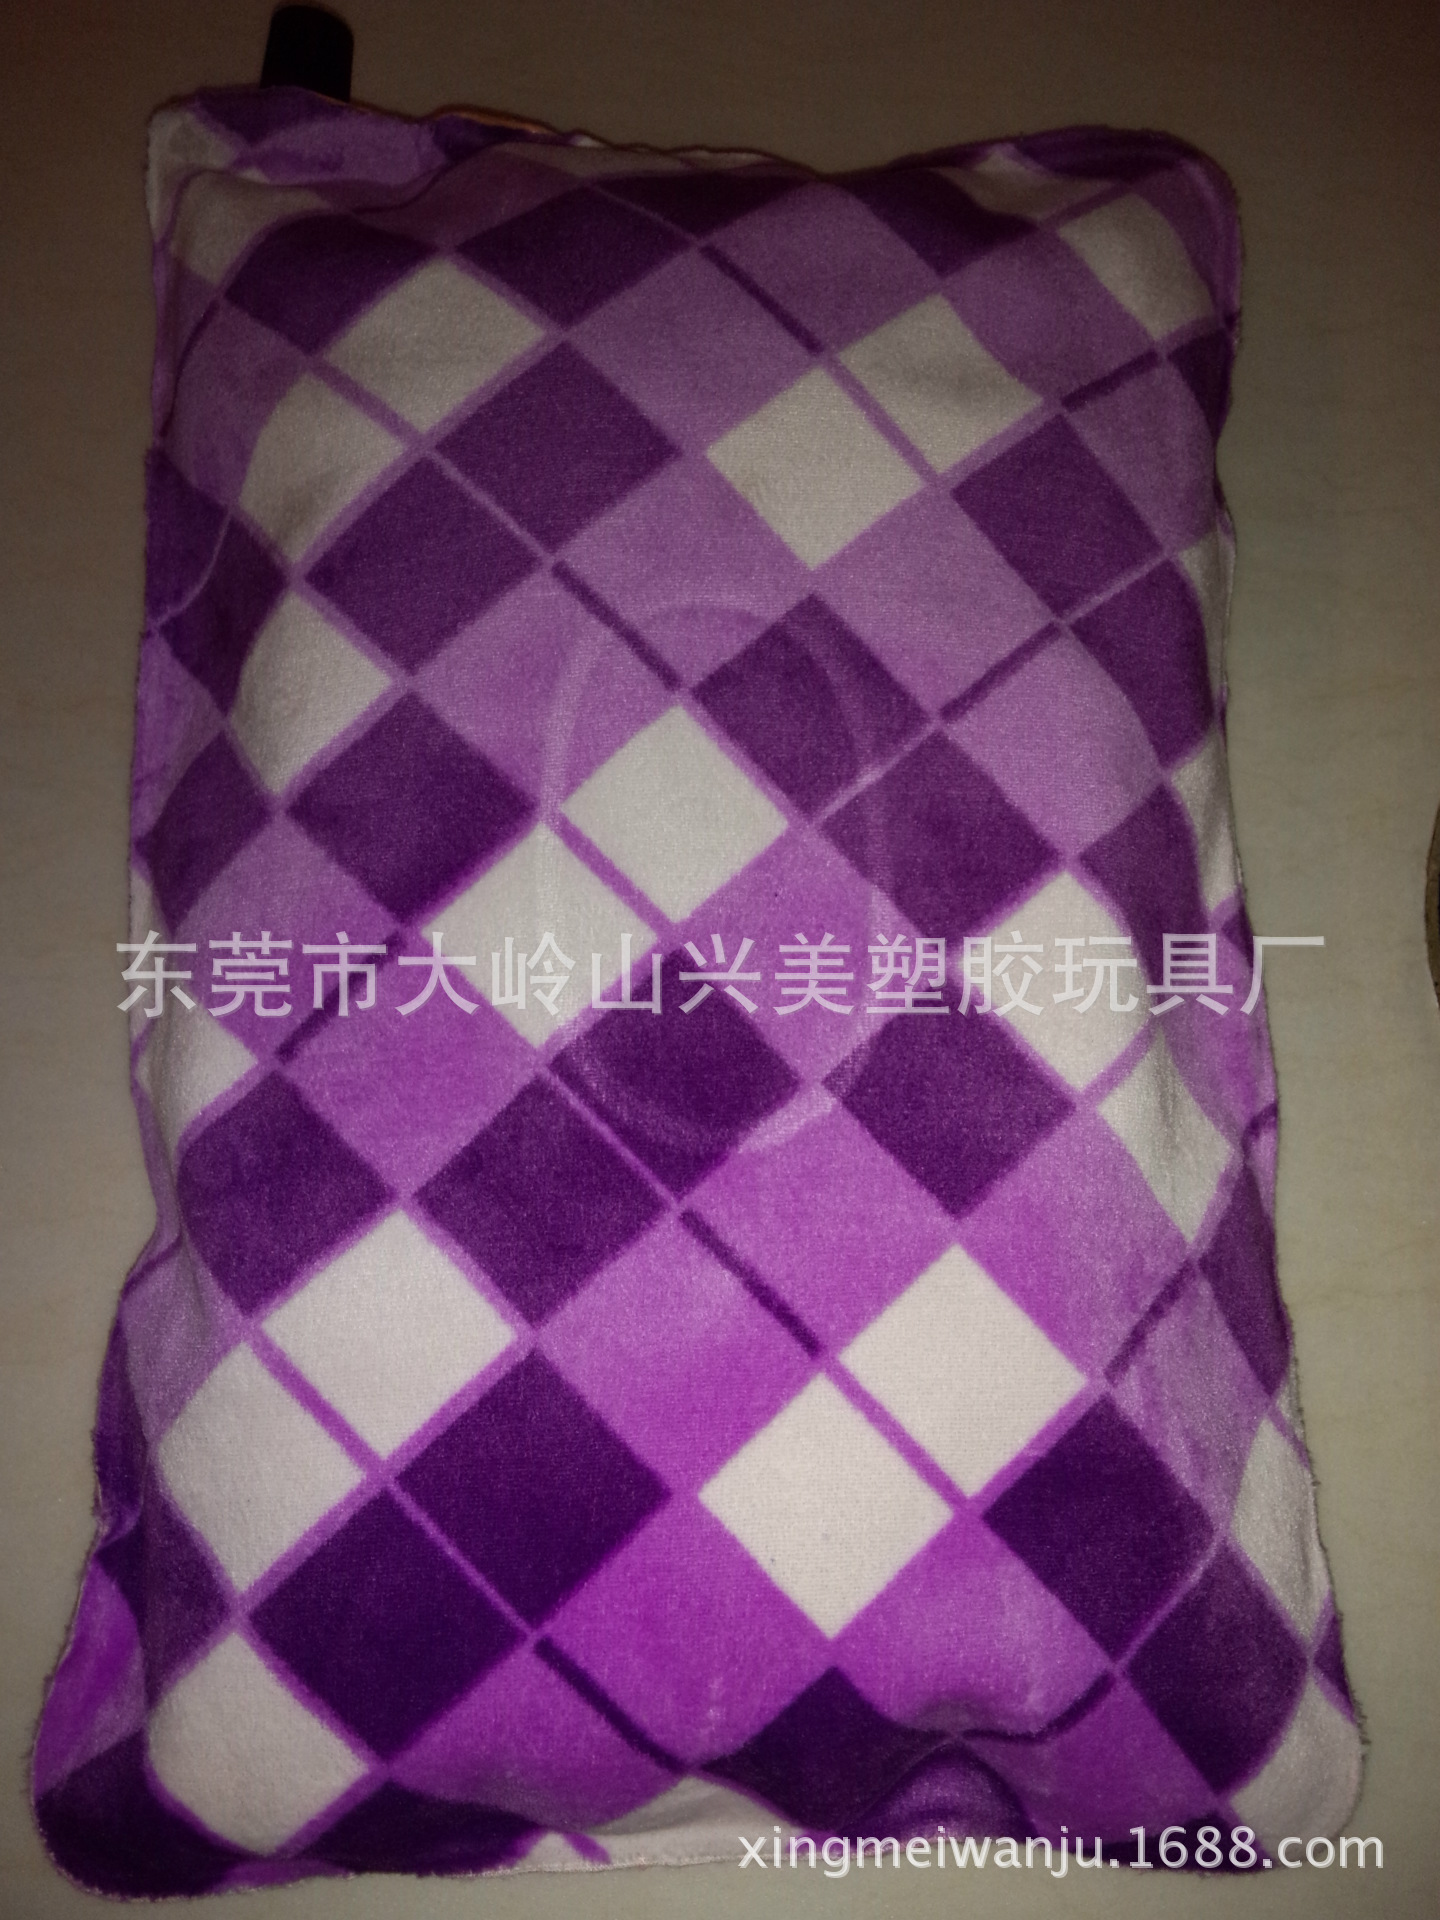 厂家直销自动充气枕 绒布材料自动充气枕 可订制保健自动充气枕示例图7